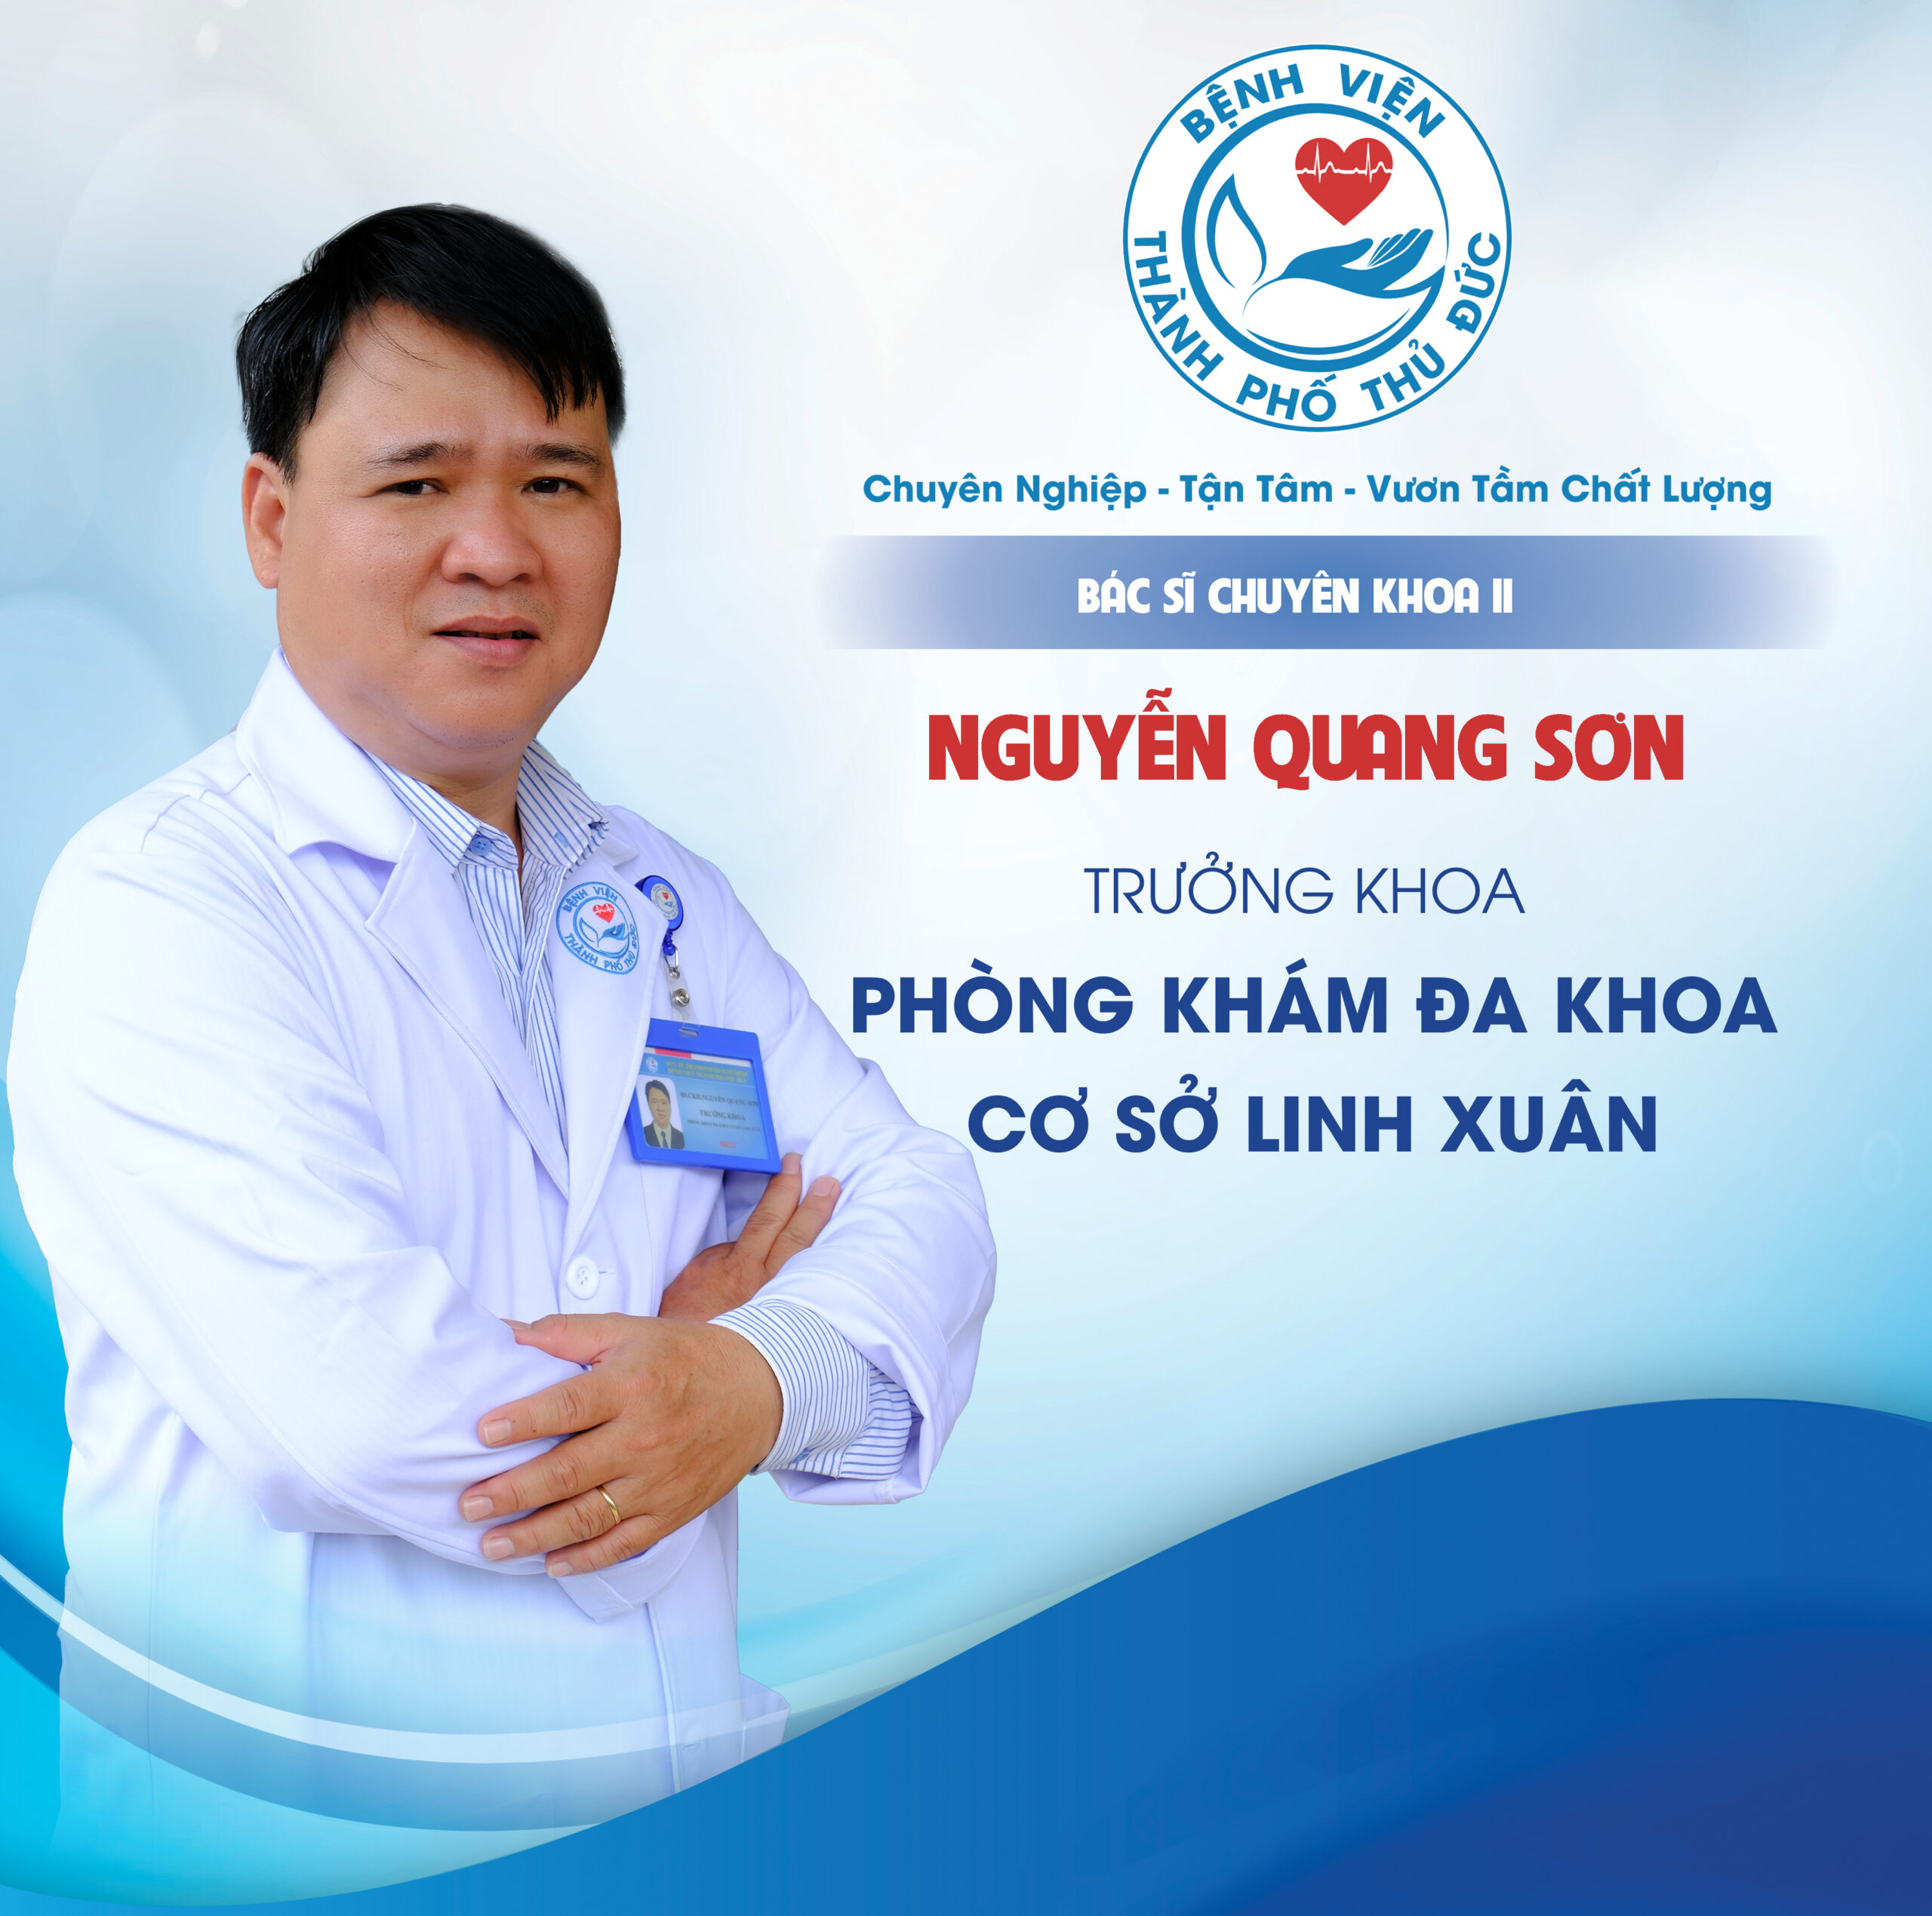 BSCKII. Nguyễn Quang Sơn - Trưởng khoa Phòng khám đa khoa Cơ sở Linh Xuân